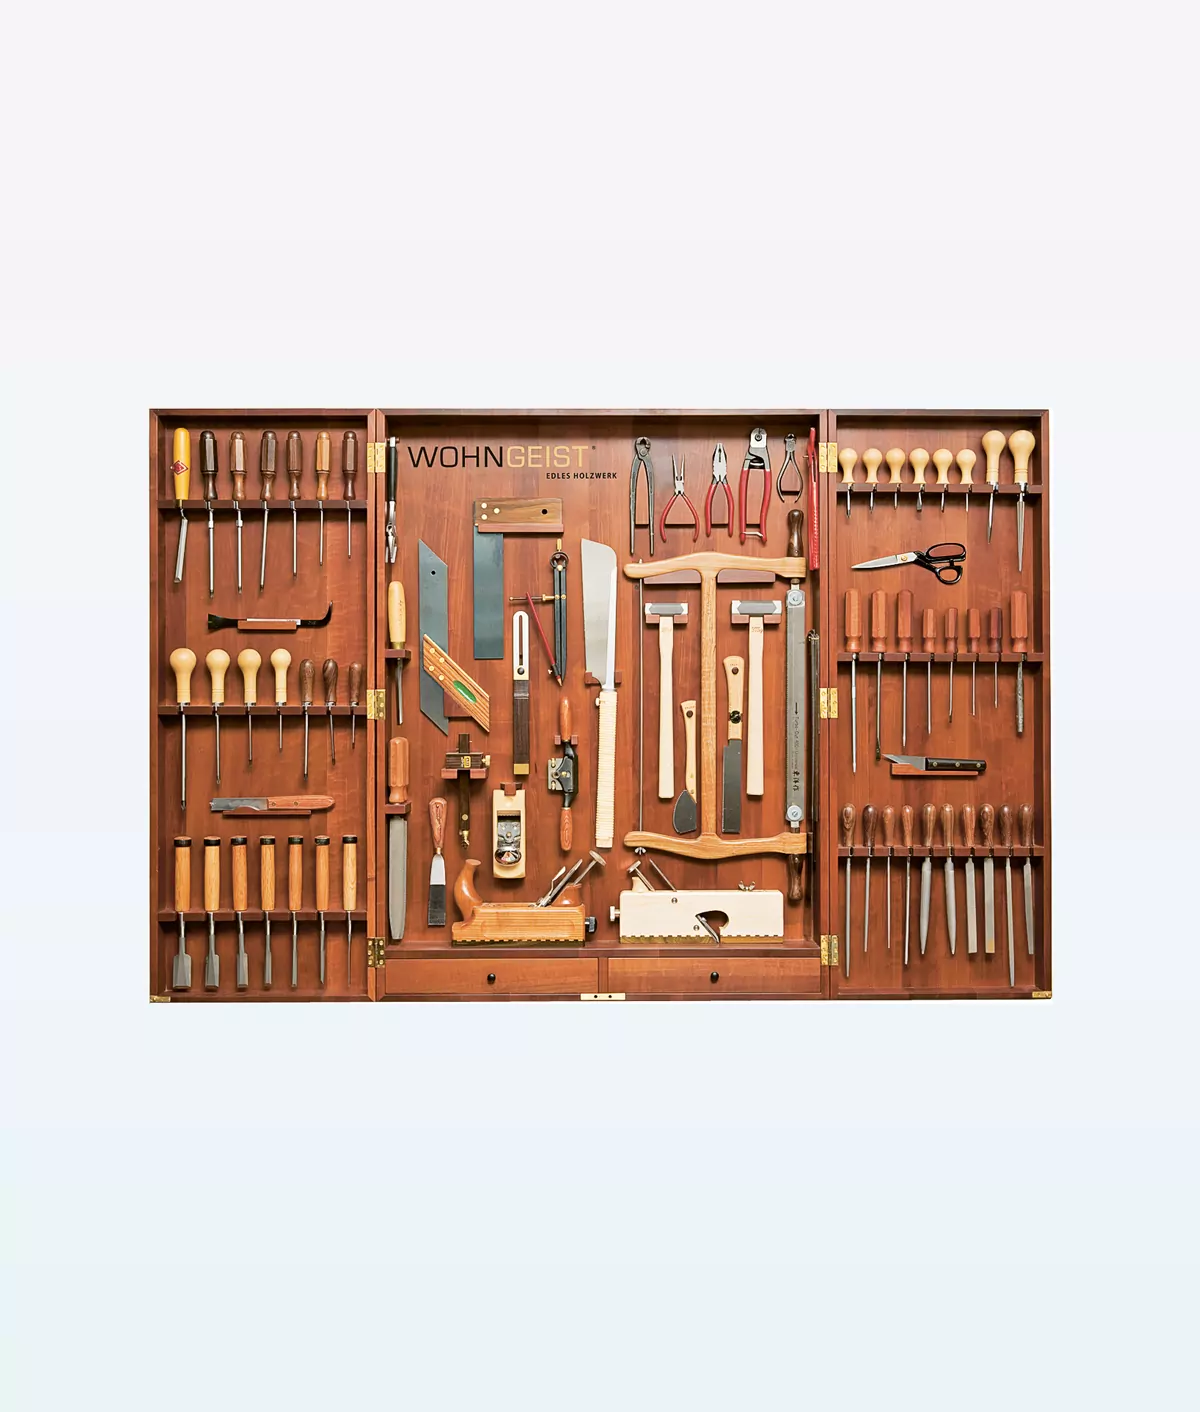 WohnGeist Tools Luxury Cabinet